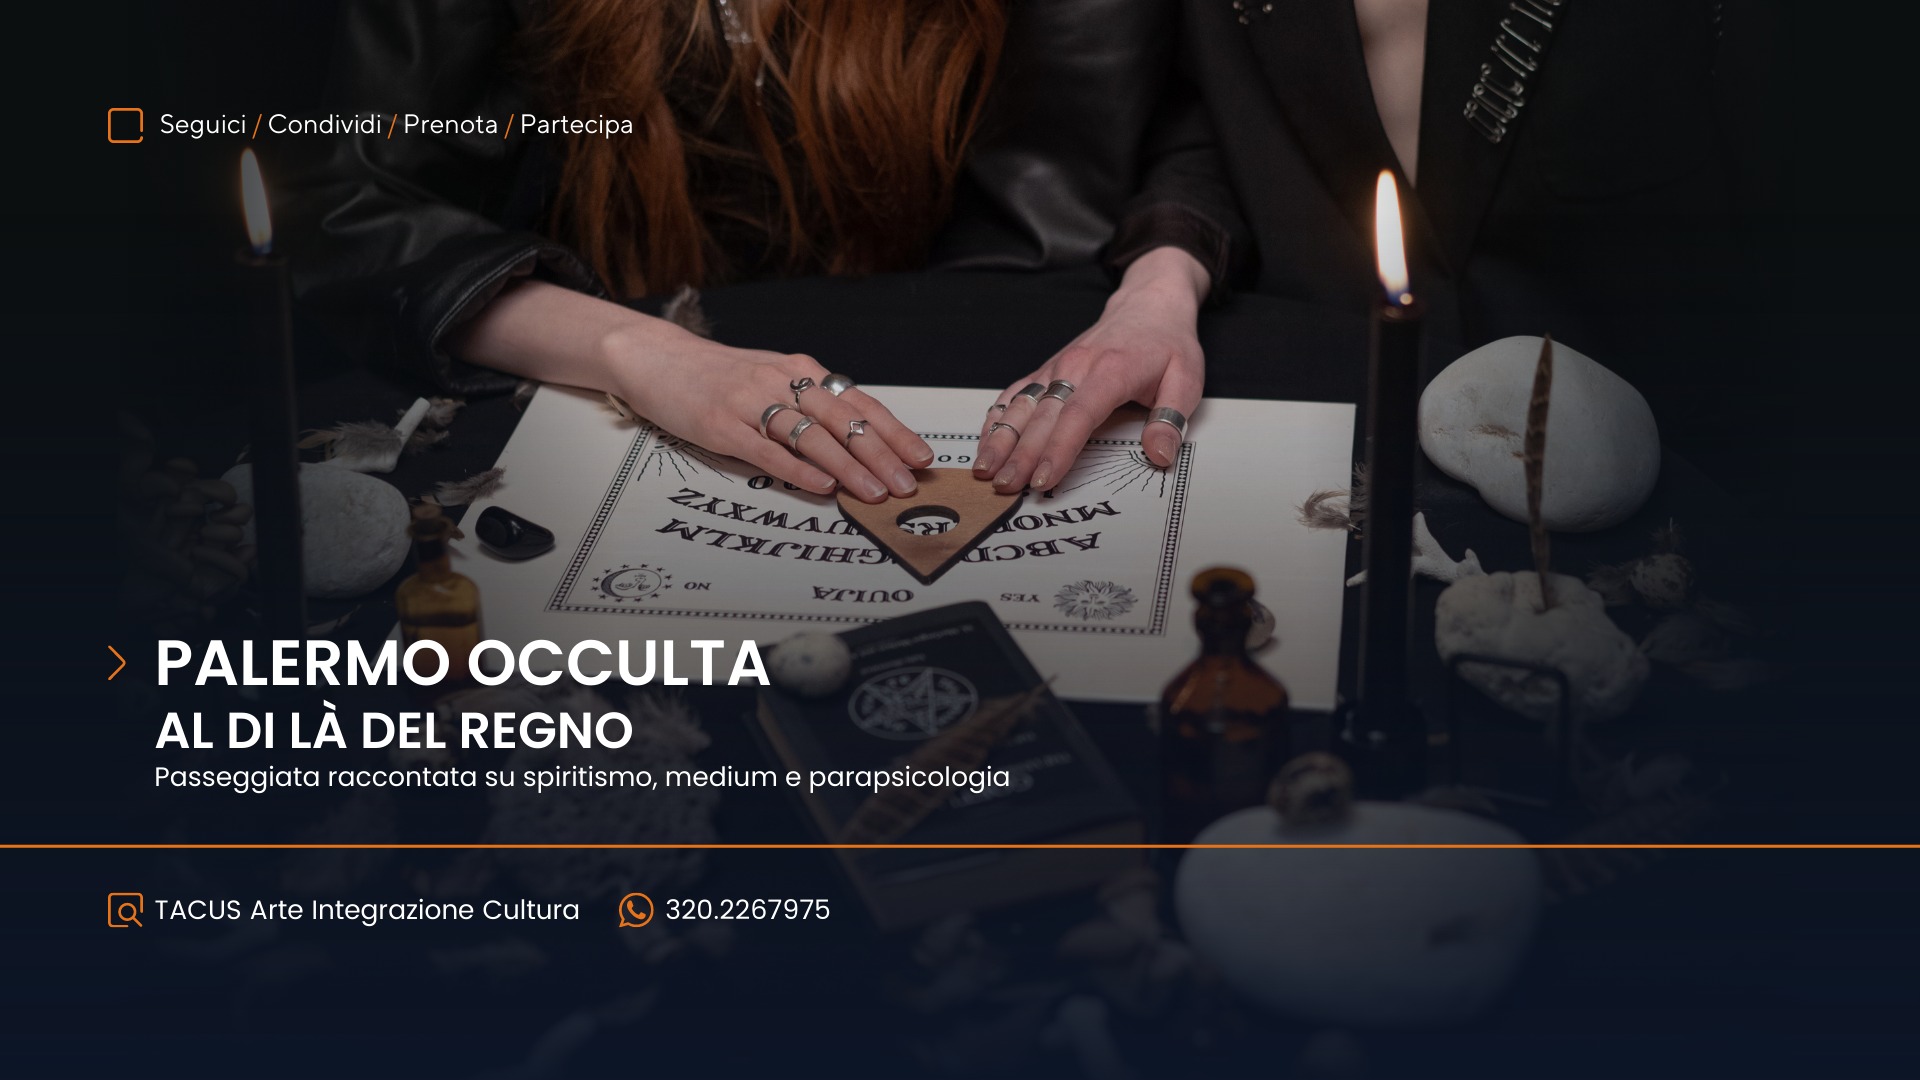 Palermo occulta tacus associazione